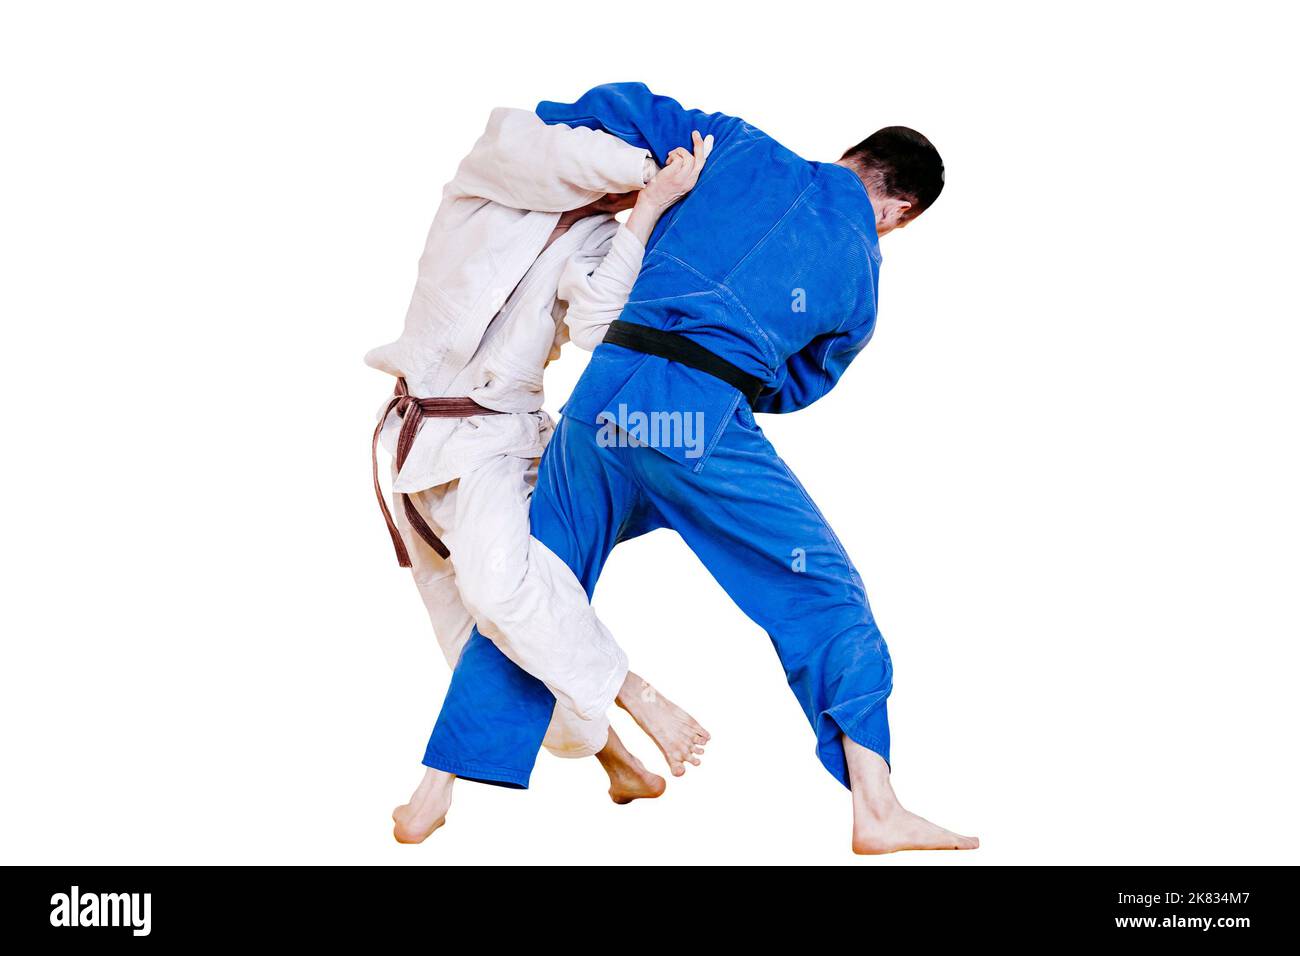 i combattenti di judo combattono nella competizione di judo Foto Stock